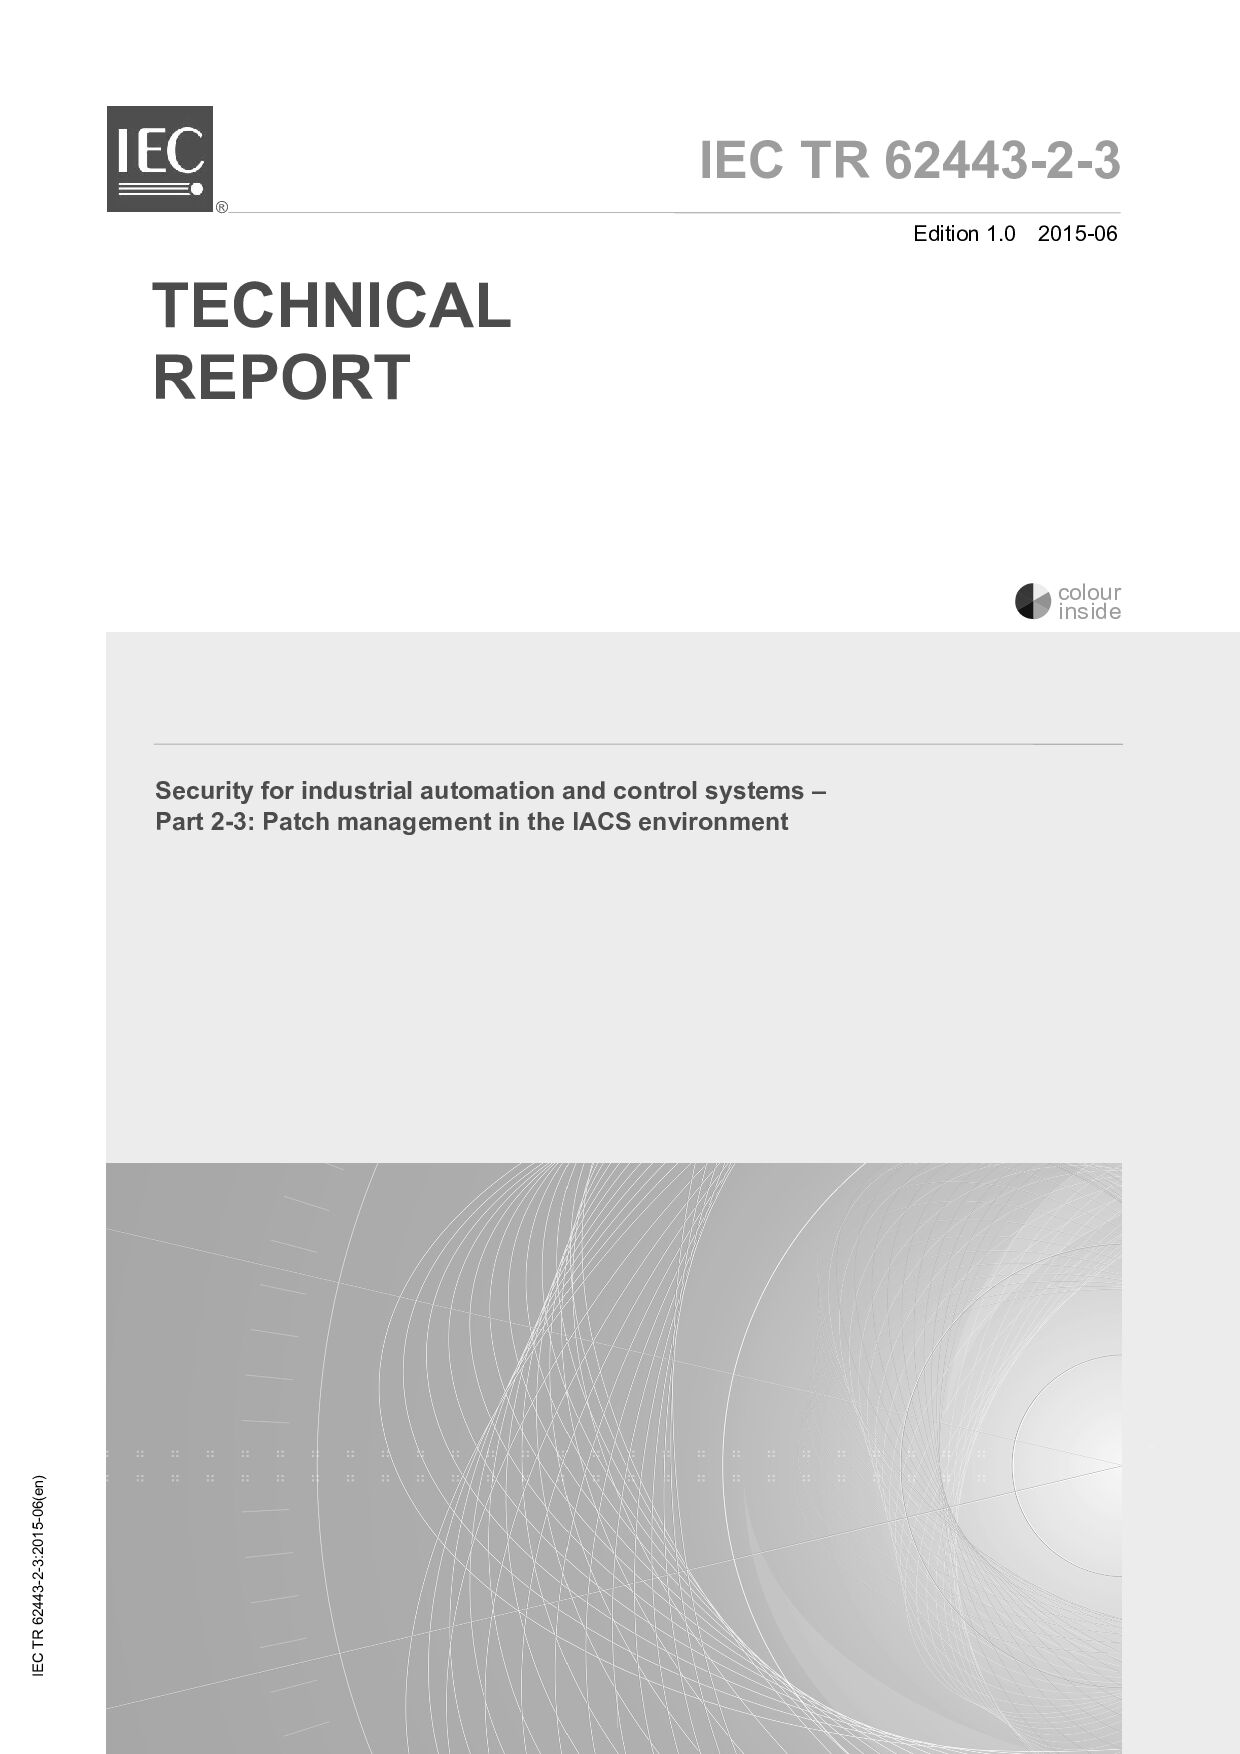 IEC TR 62443-2-3:2015